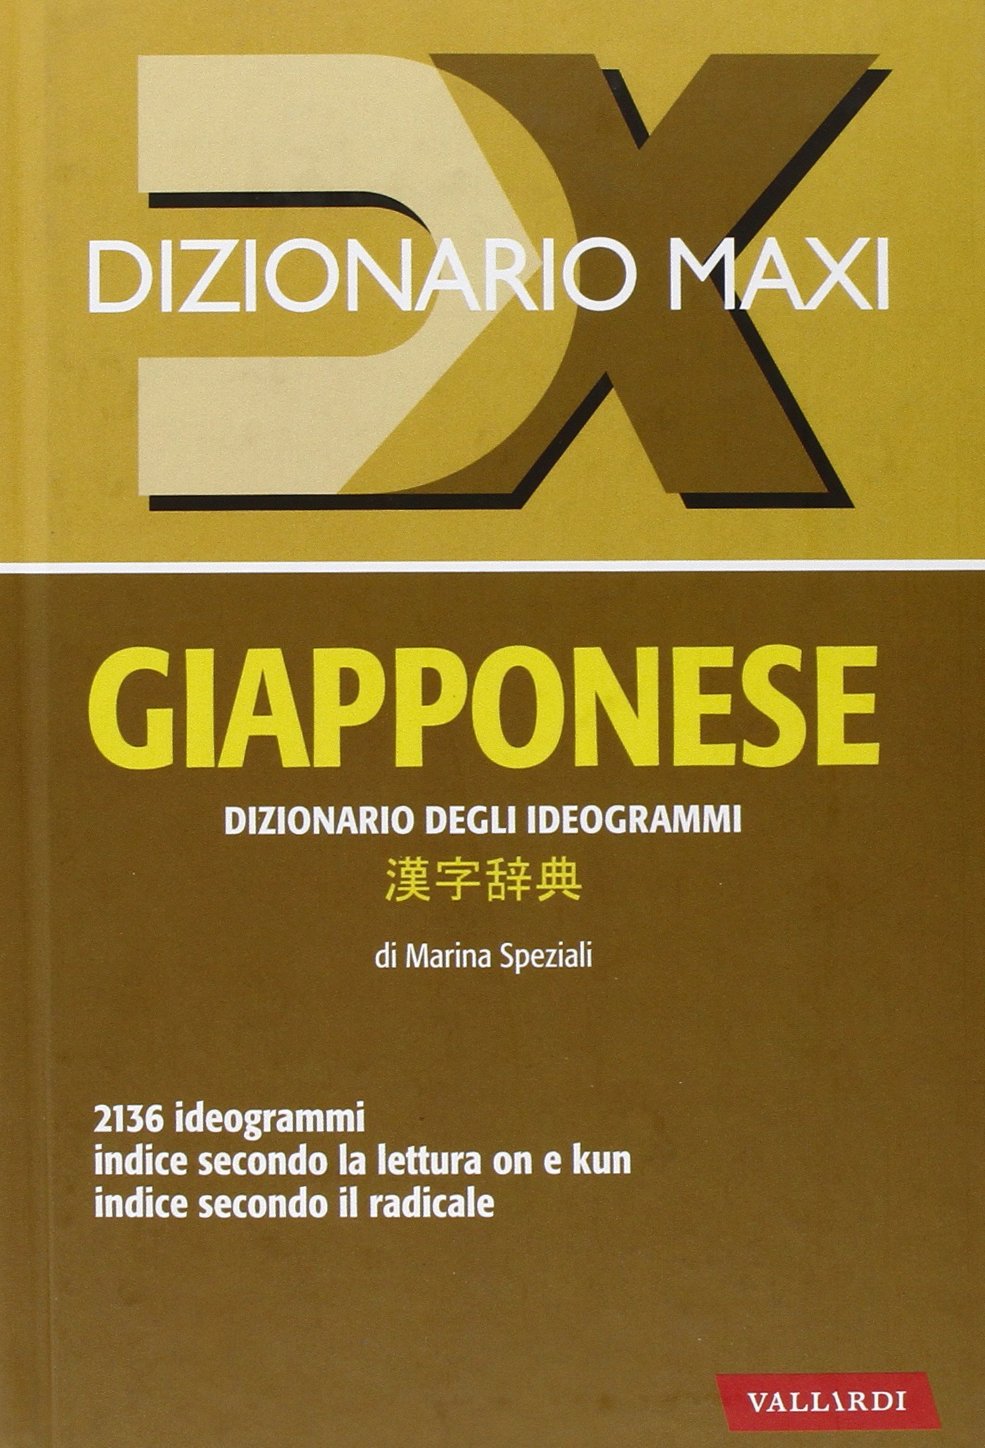 DIZIONARIO MAXI GIAPPONESE